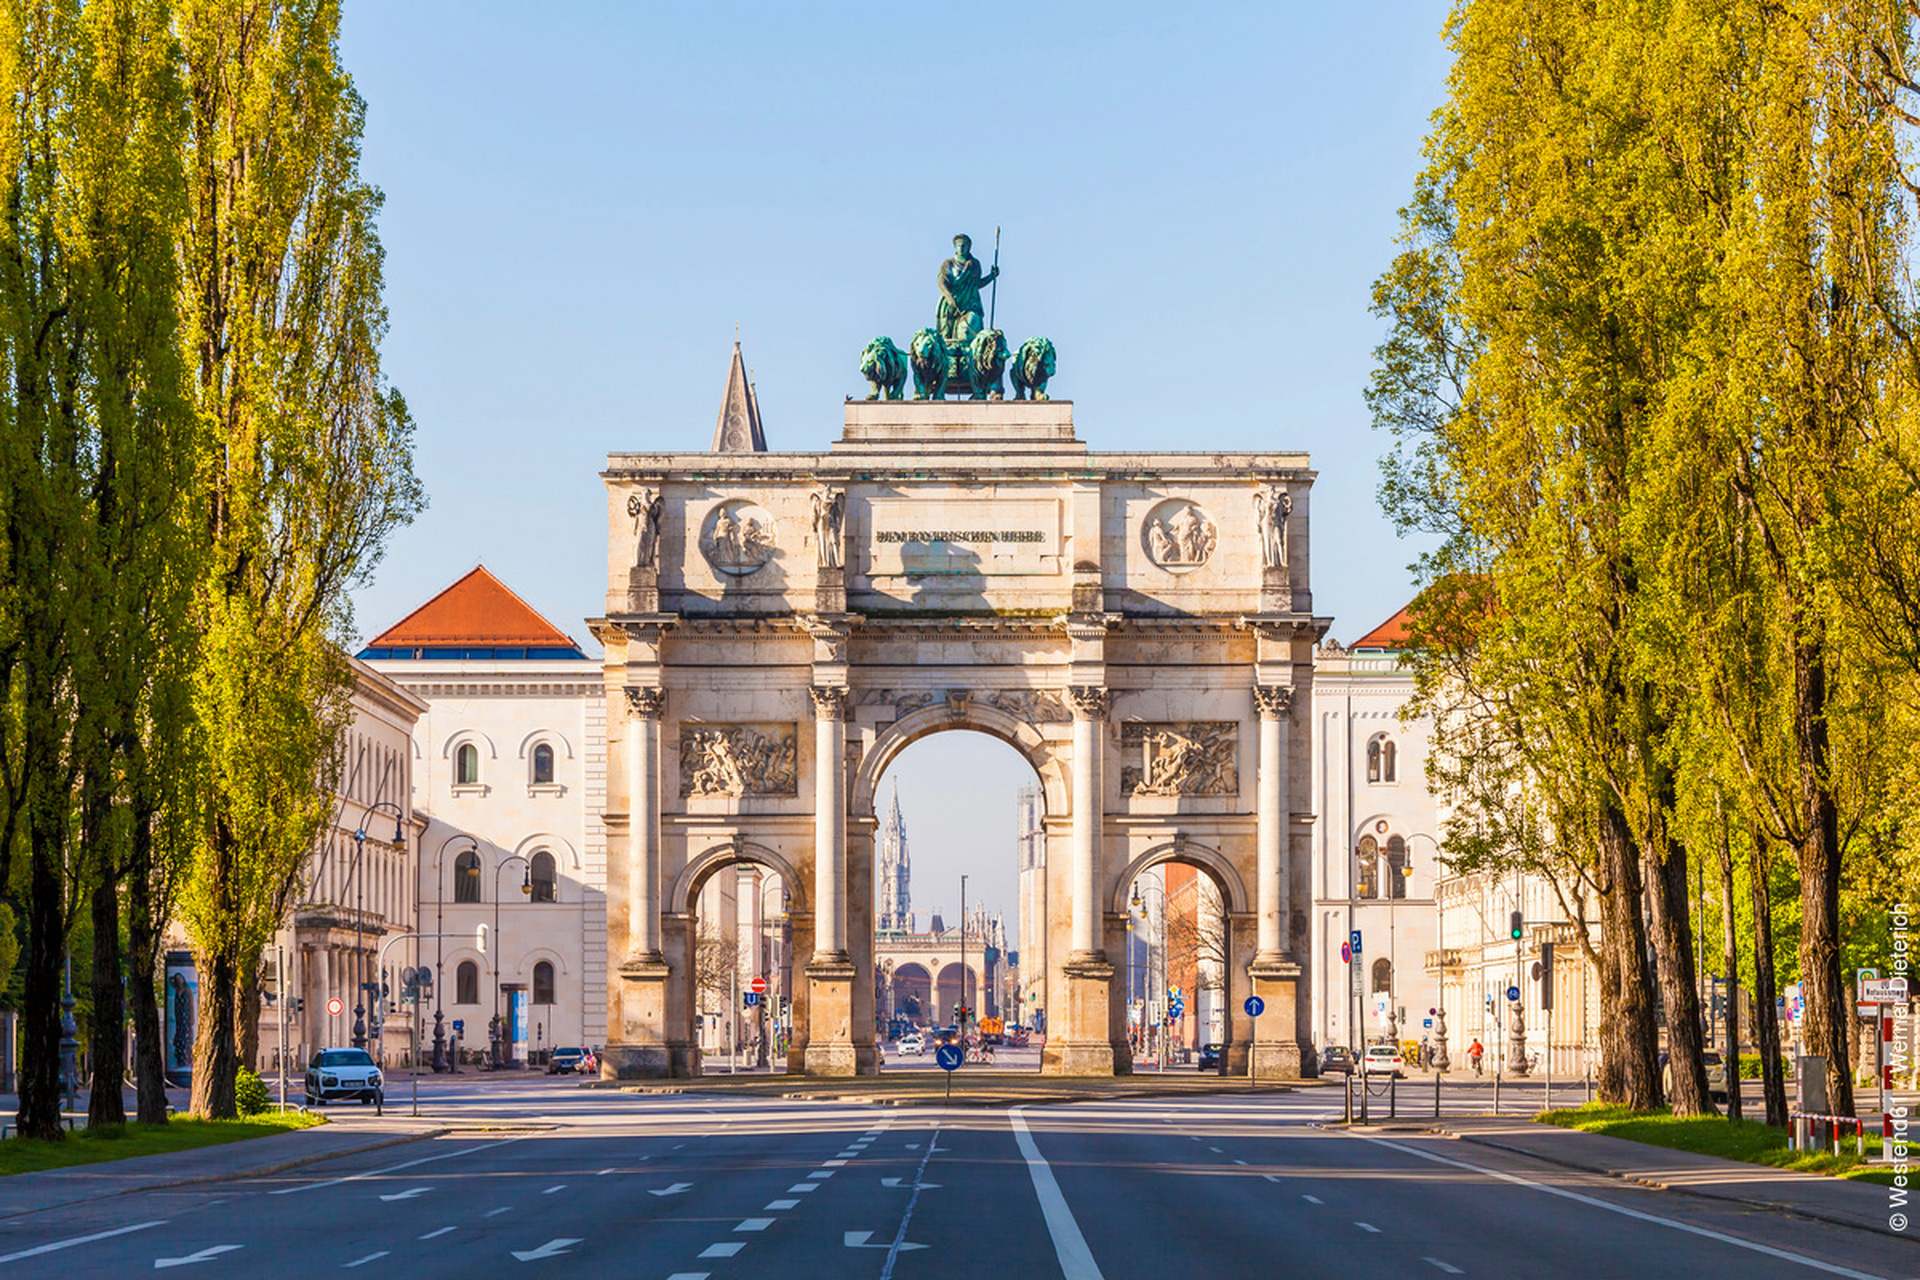 慕尼黑是德国的生活品味之都和旅游胜地,不管是城市游览,还是以慕尼黑